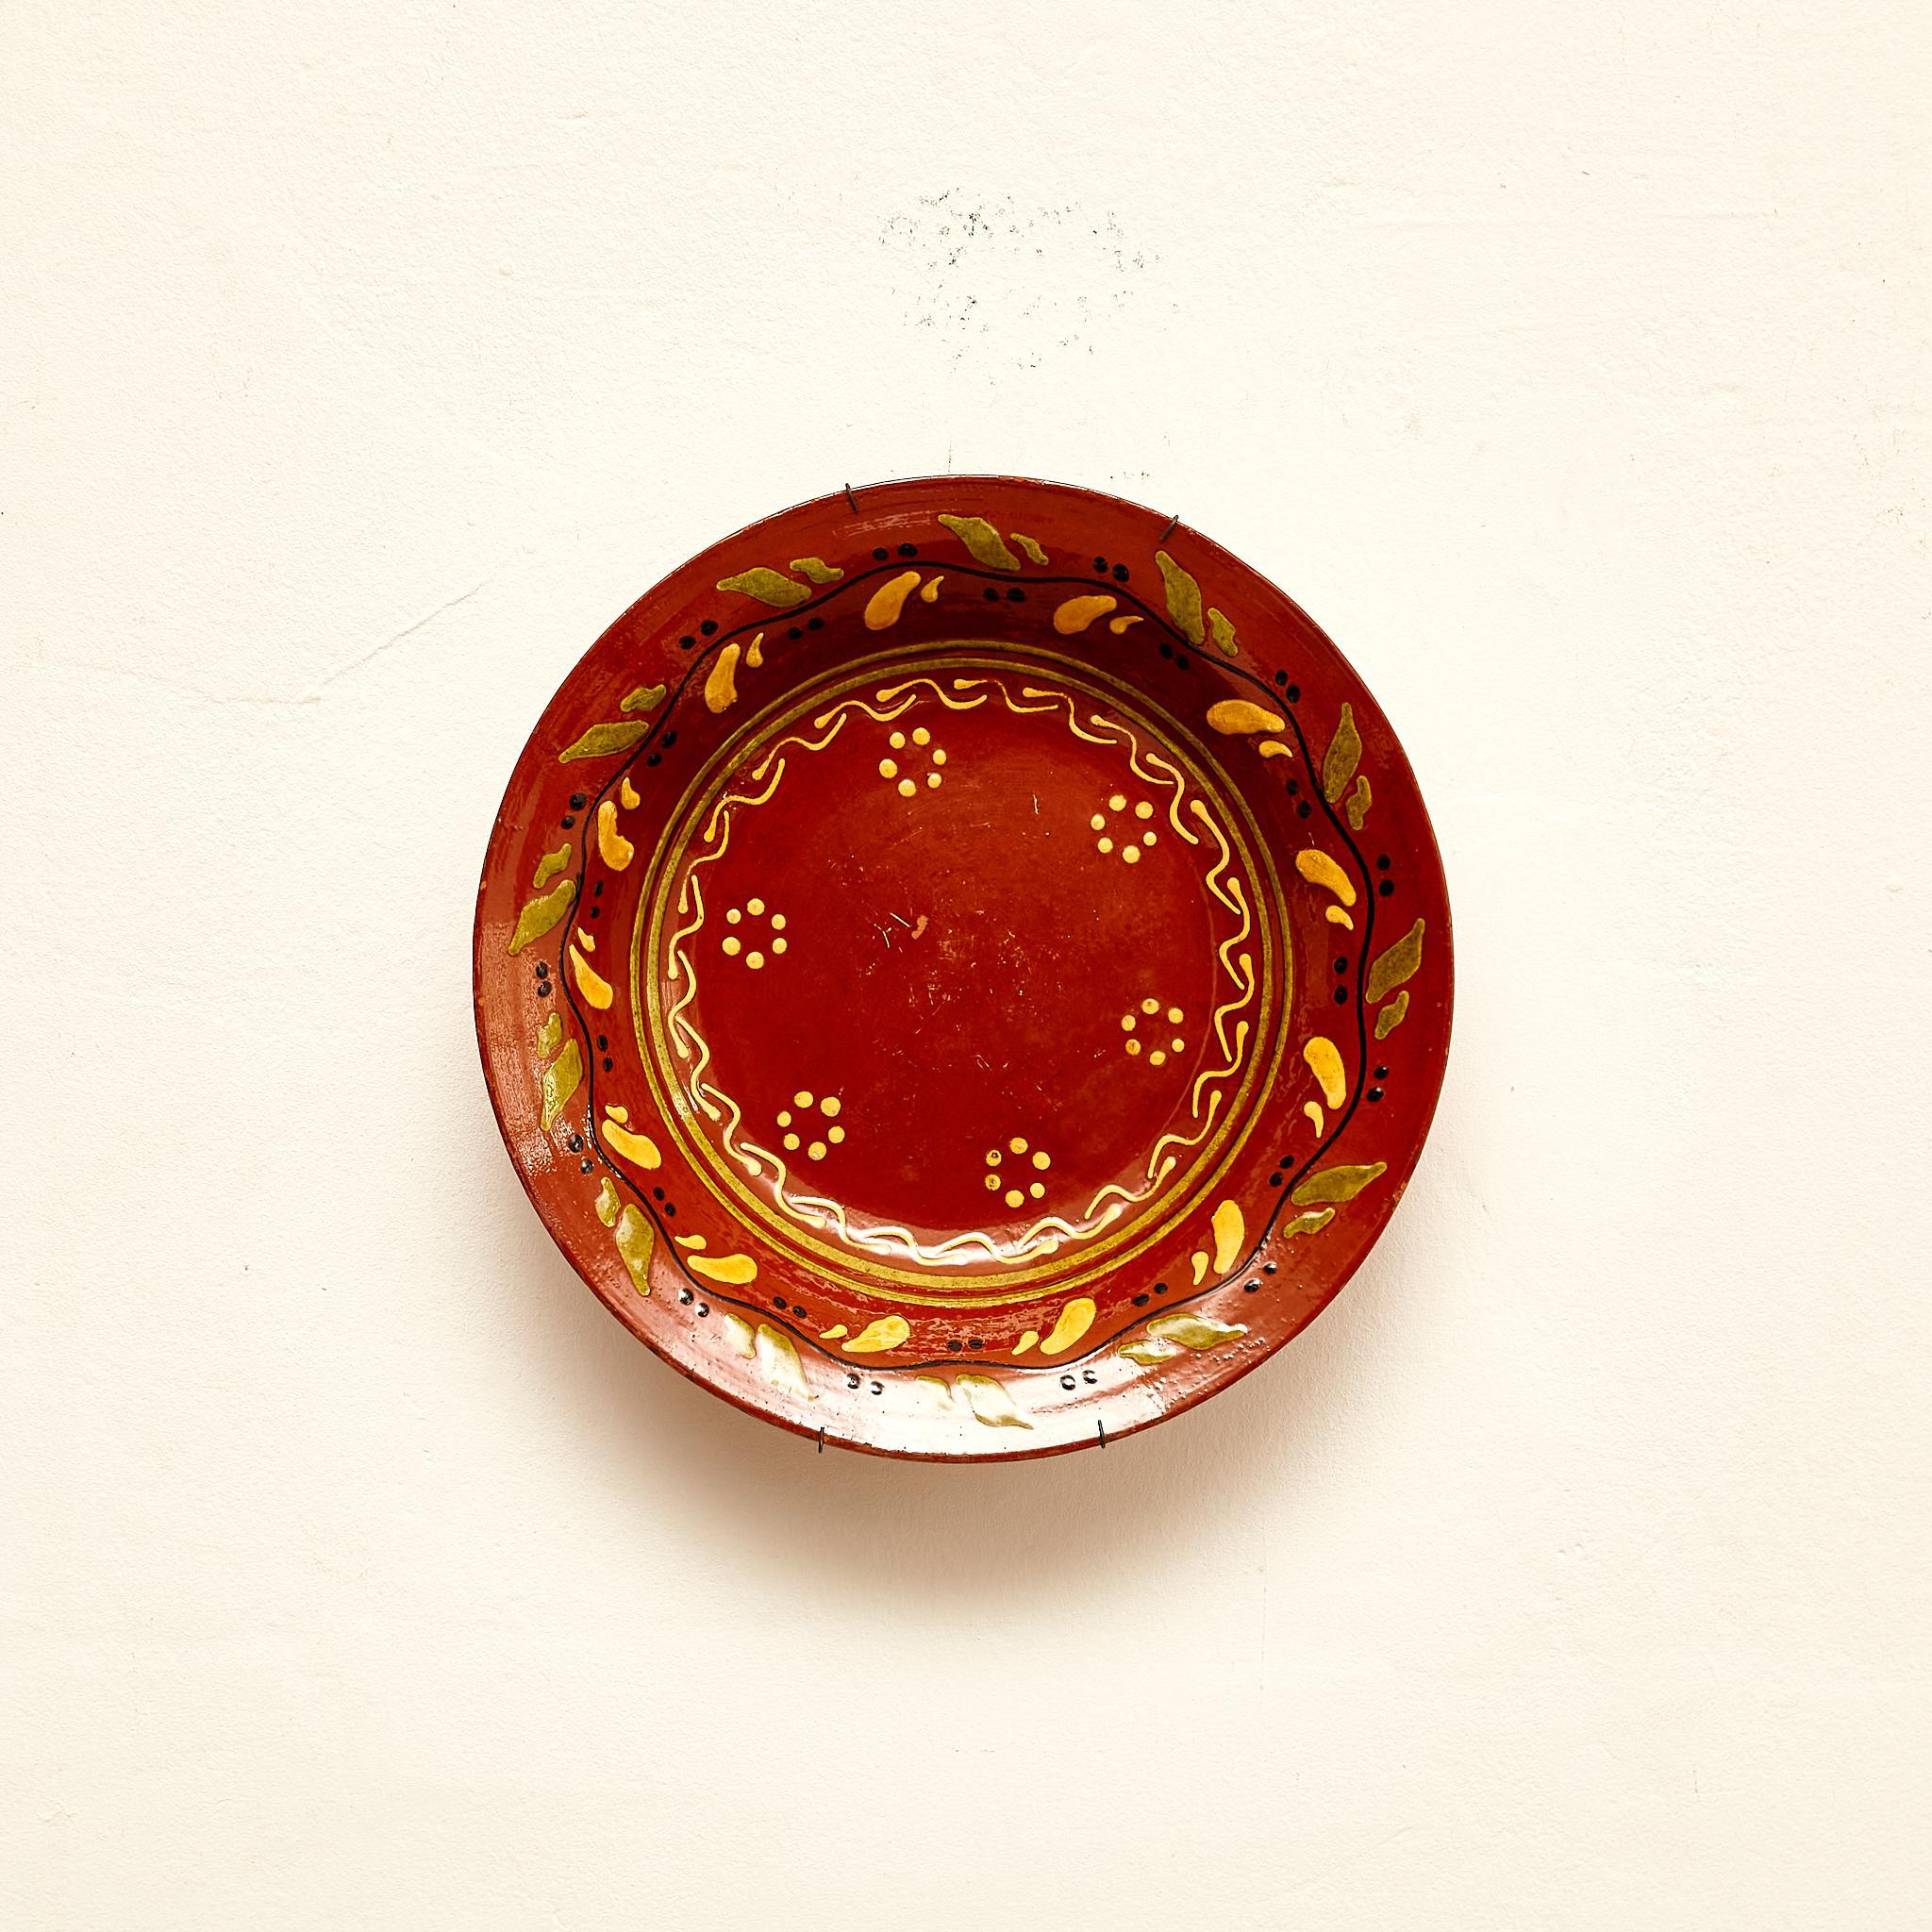 Adoptez le charme intemporel de l'Espagne avec cette assiette rustique traditionnelle en céramique peinte à la main datant des années 1940. Ornée d'un savoir-faire artisanal exquis, cette assiette témoigne du riche patrimoine artistique de la